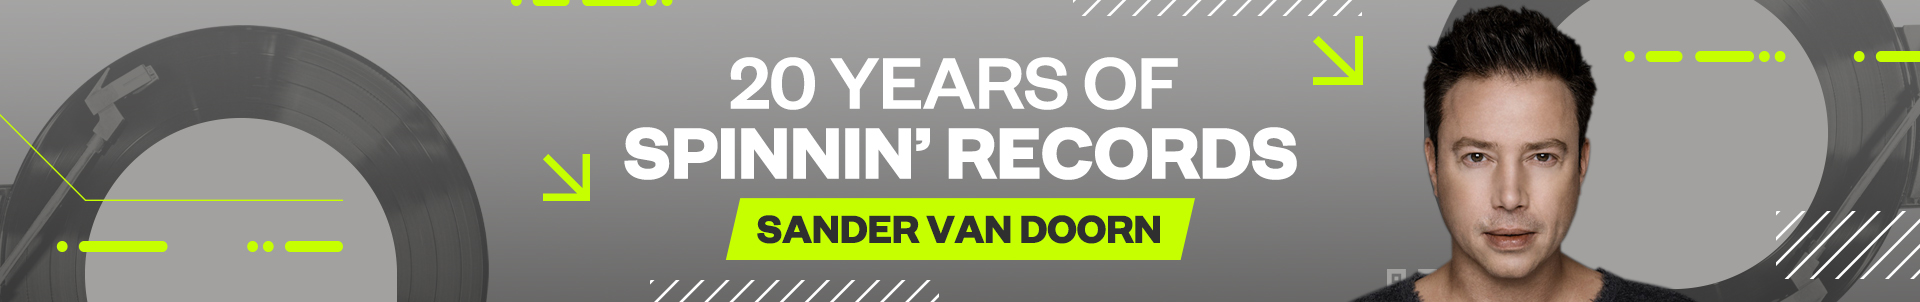 20 Years of Spinnin' Records  episode 1 : Sander van Doorn  shares his best Spinnin' memories